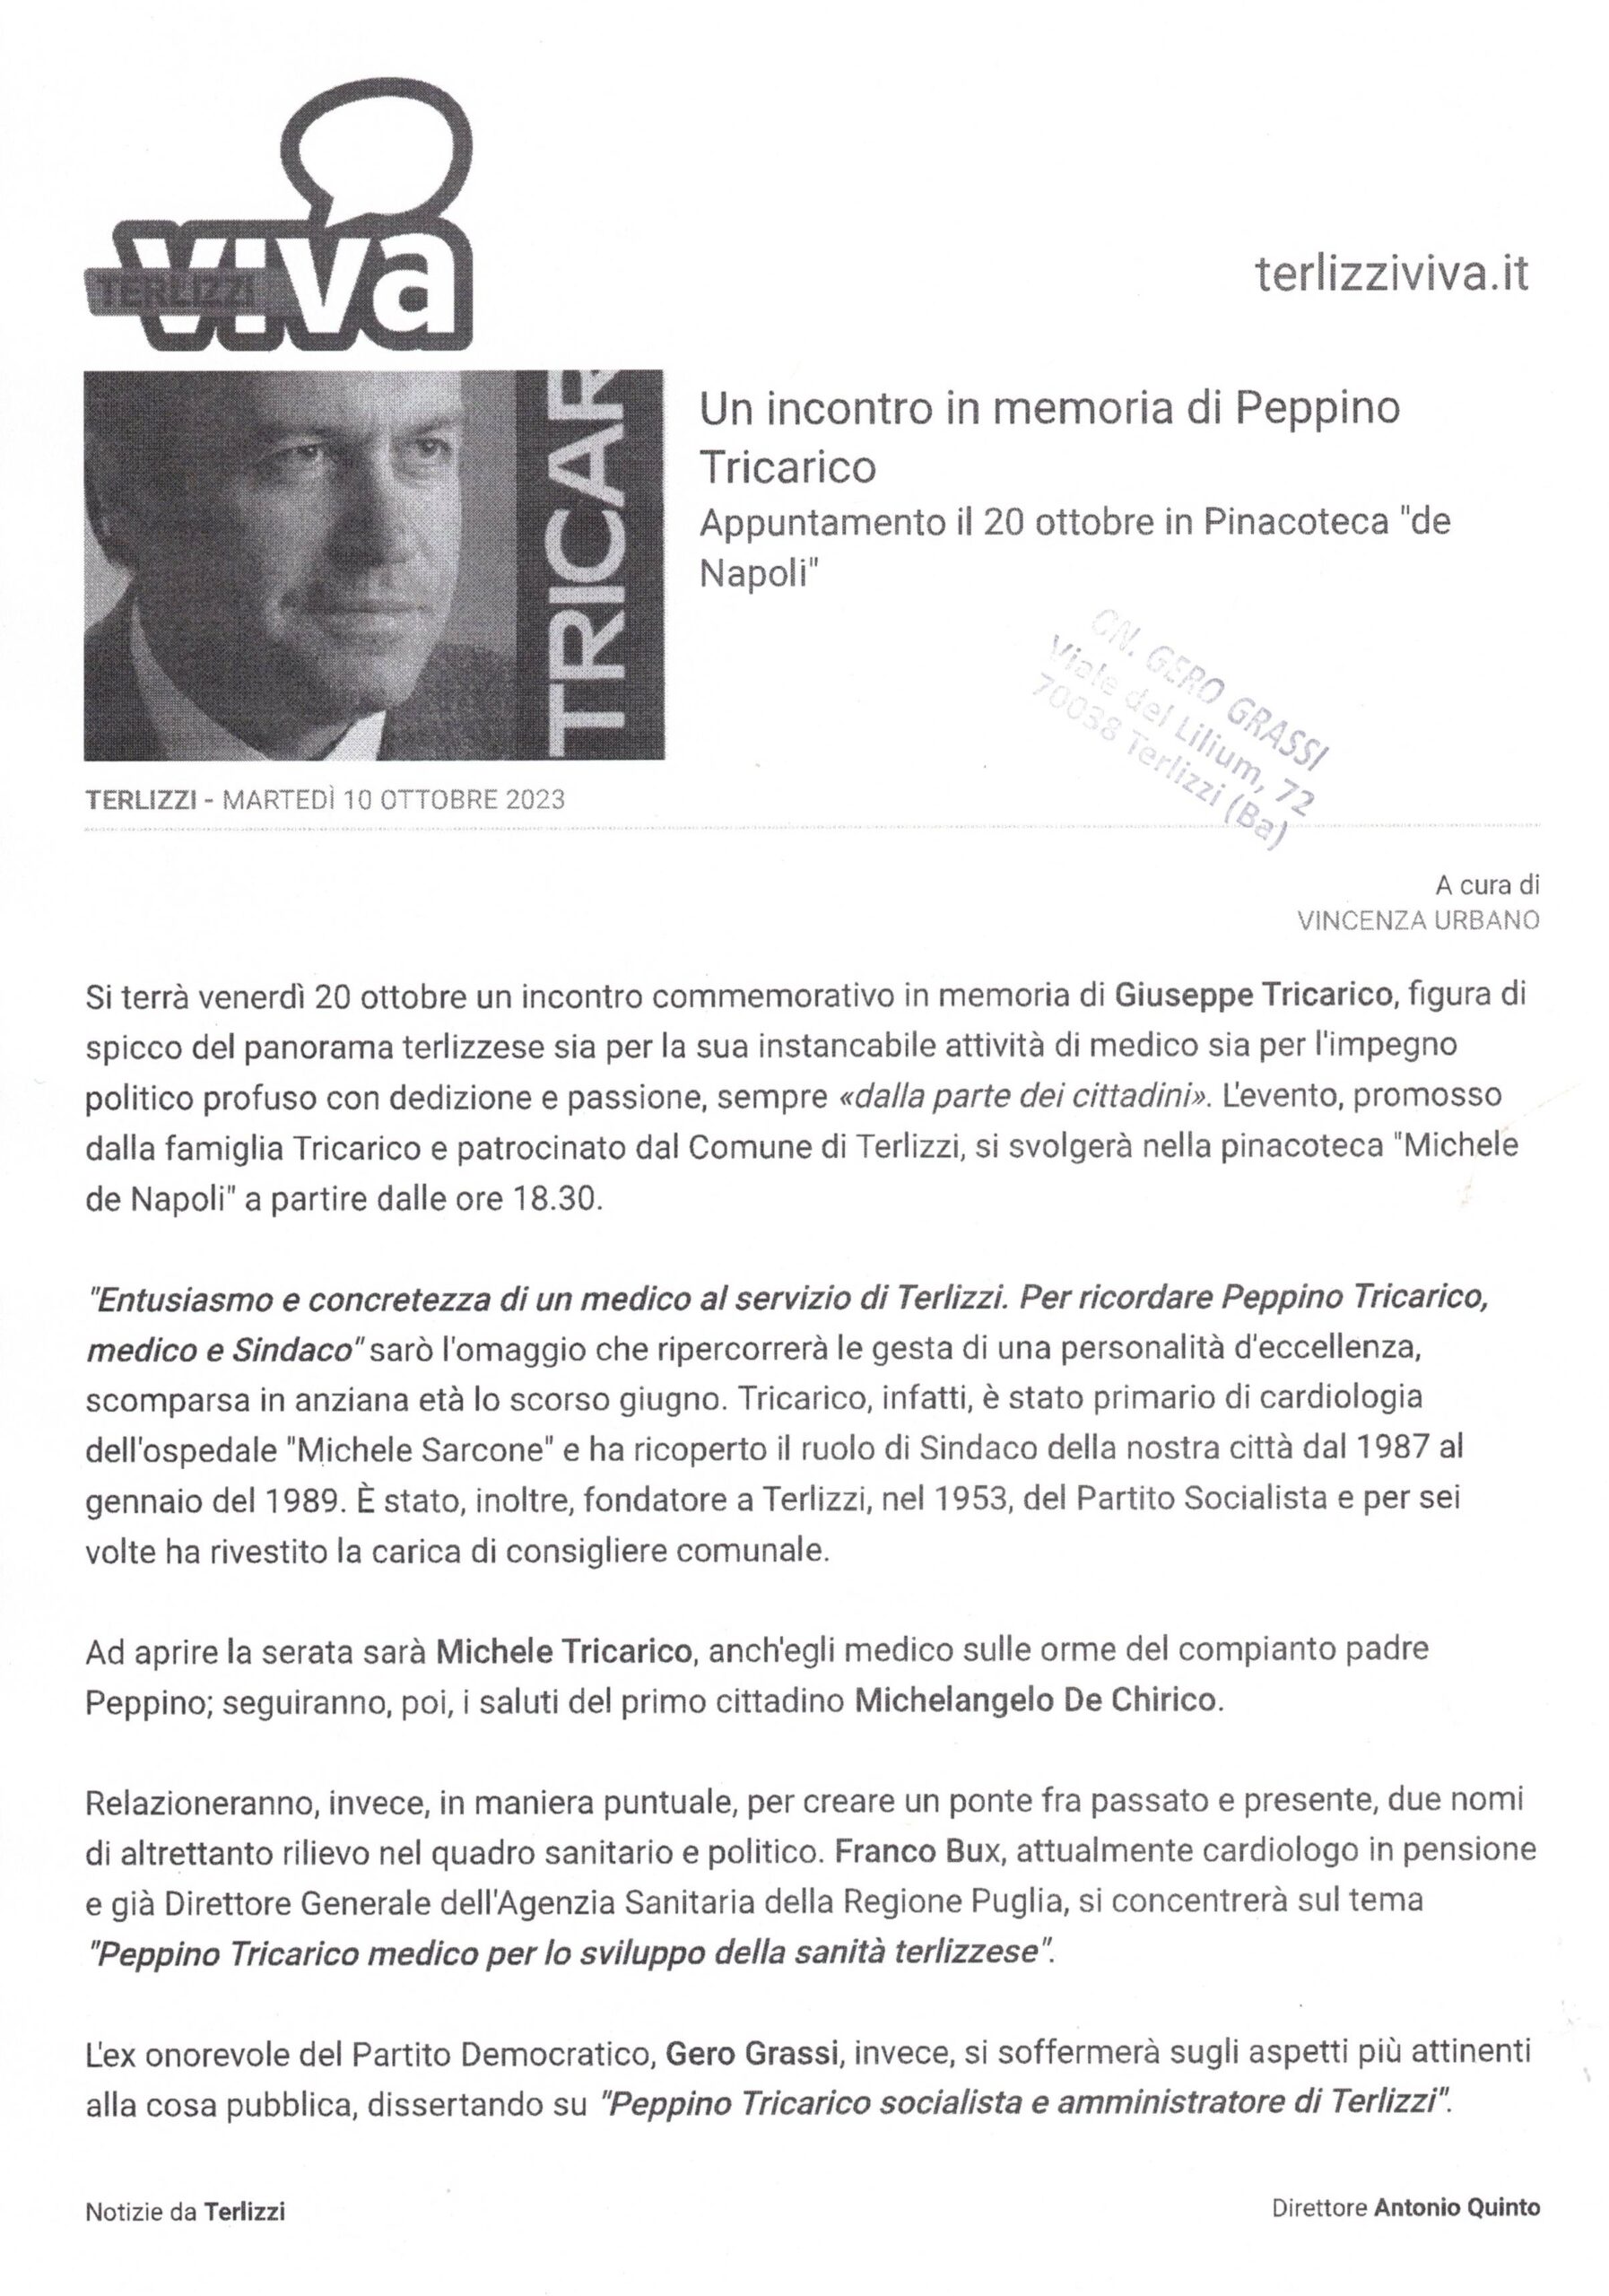 TERLIZZIVIVA – Un incontro in memoria di Peppino Tricarico. Appuntamento il 20 ottobre in Pinacoteca De Napoli – 10 ottobre 2023